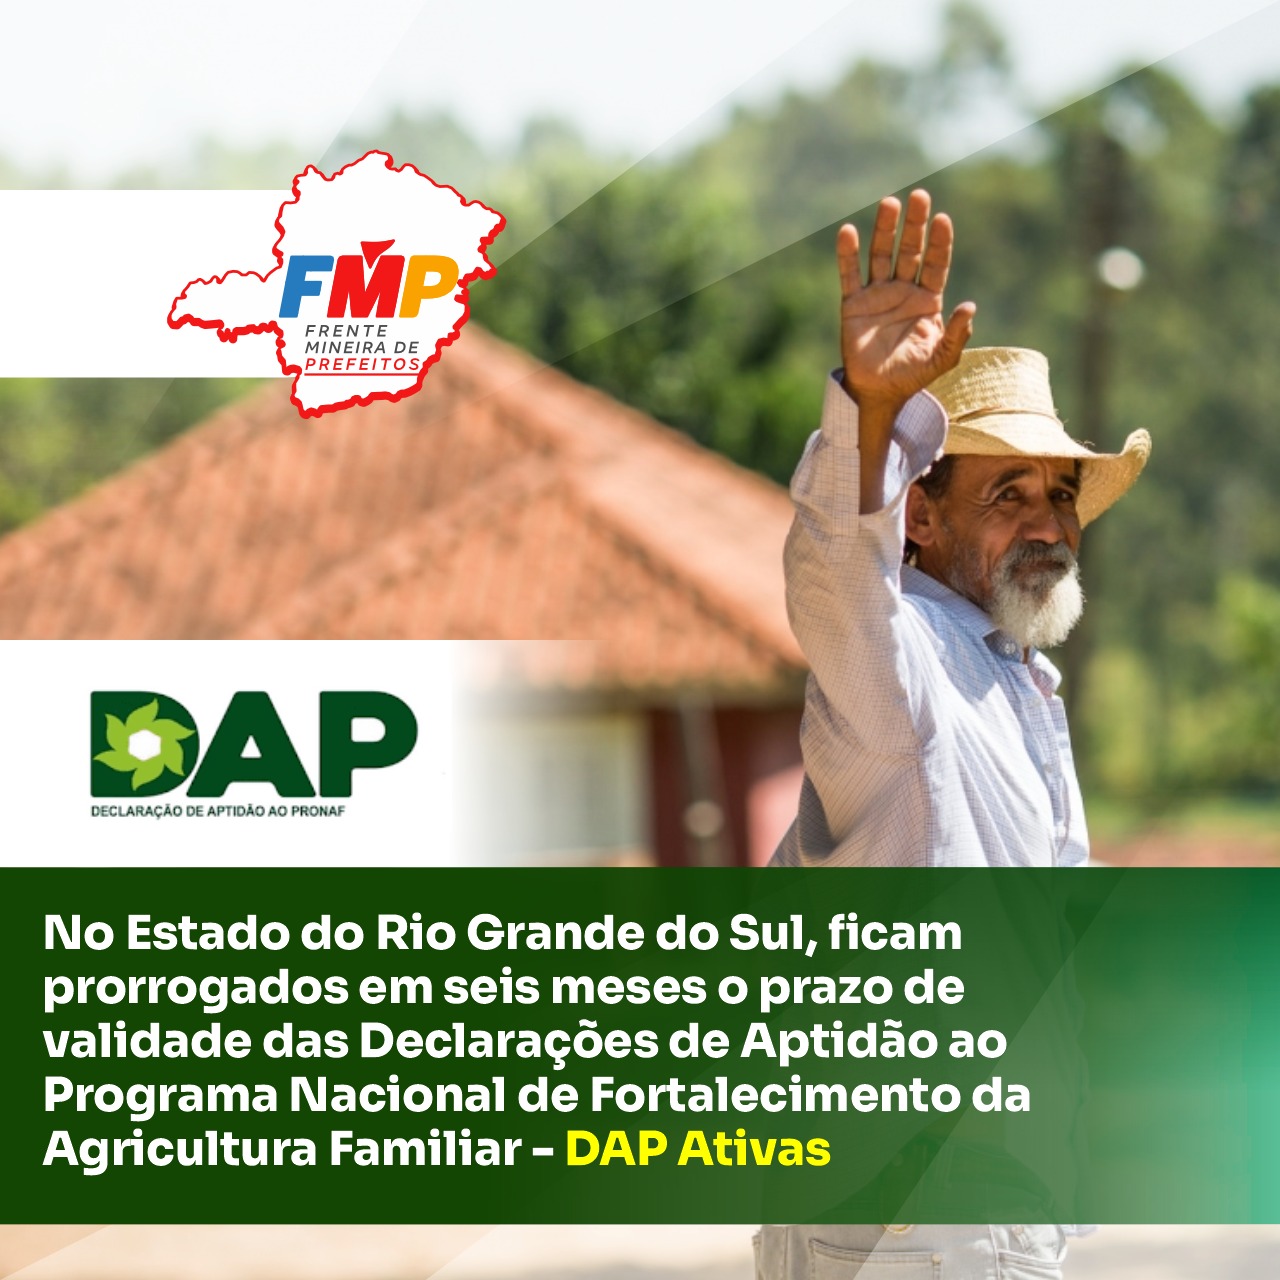 No Estado do Rio Grande do Sul, ficam prorrogados em seis meses o prazo de validade das Declarações de Aptidão ao Programa Nacional de Fortalecimento da Agricultura Familiar – DAP Ativas